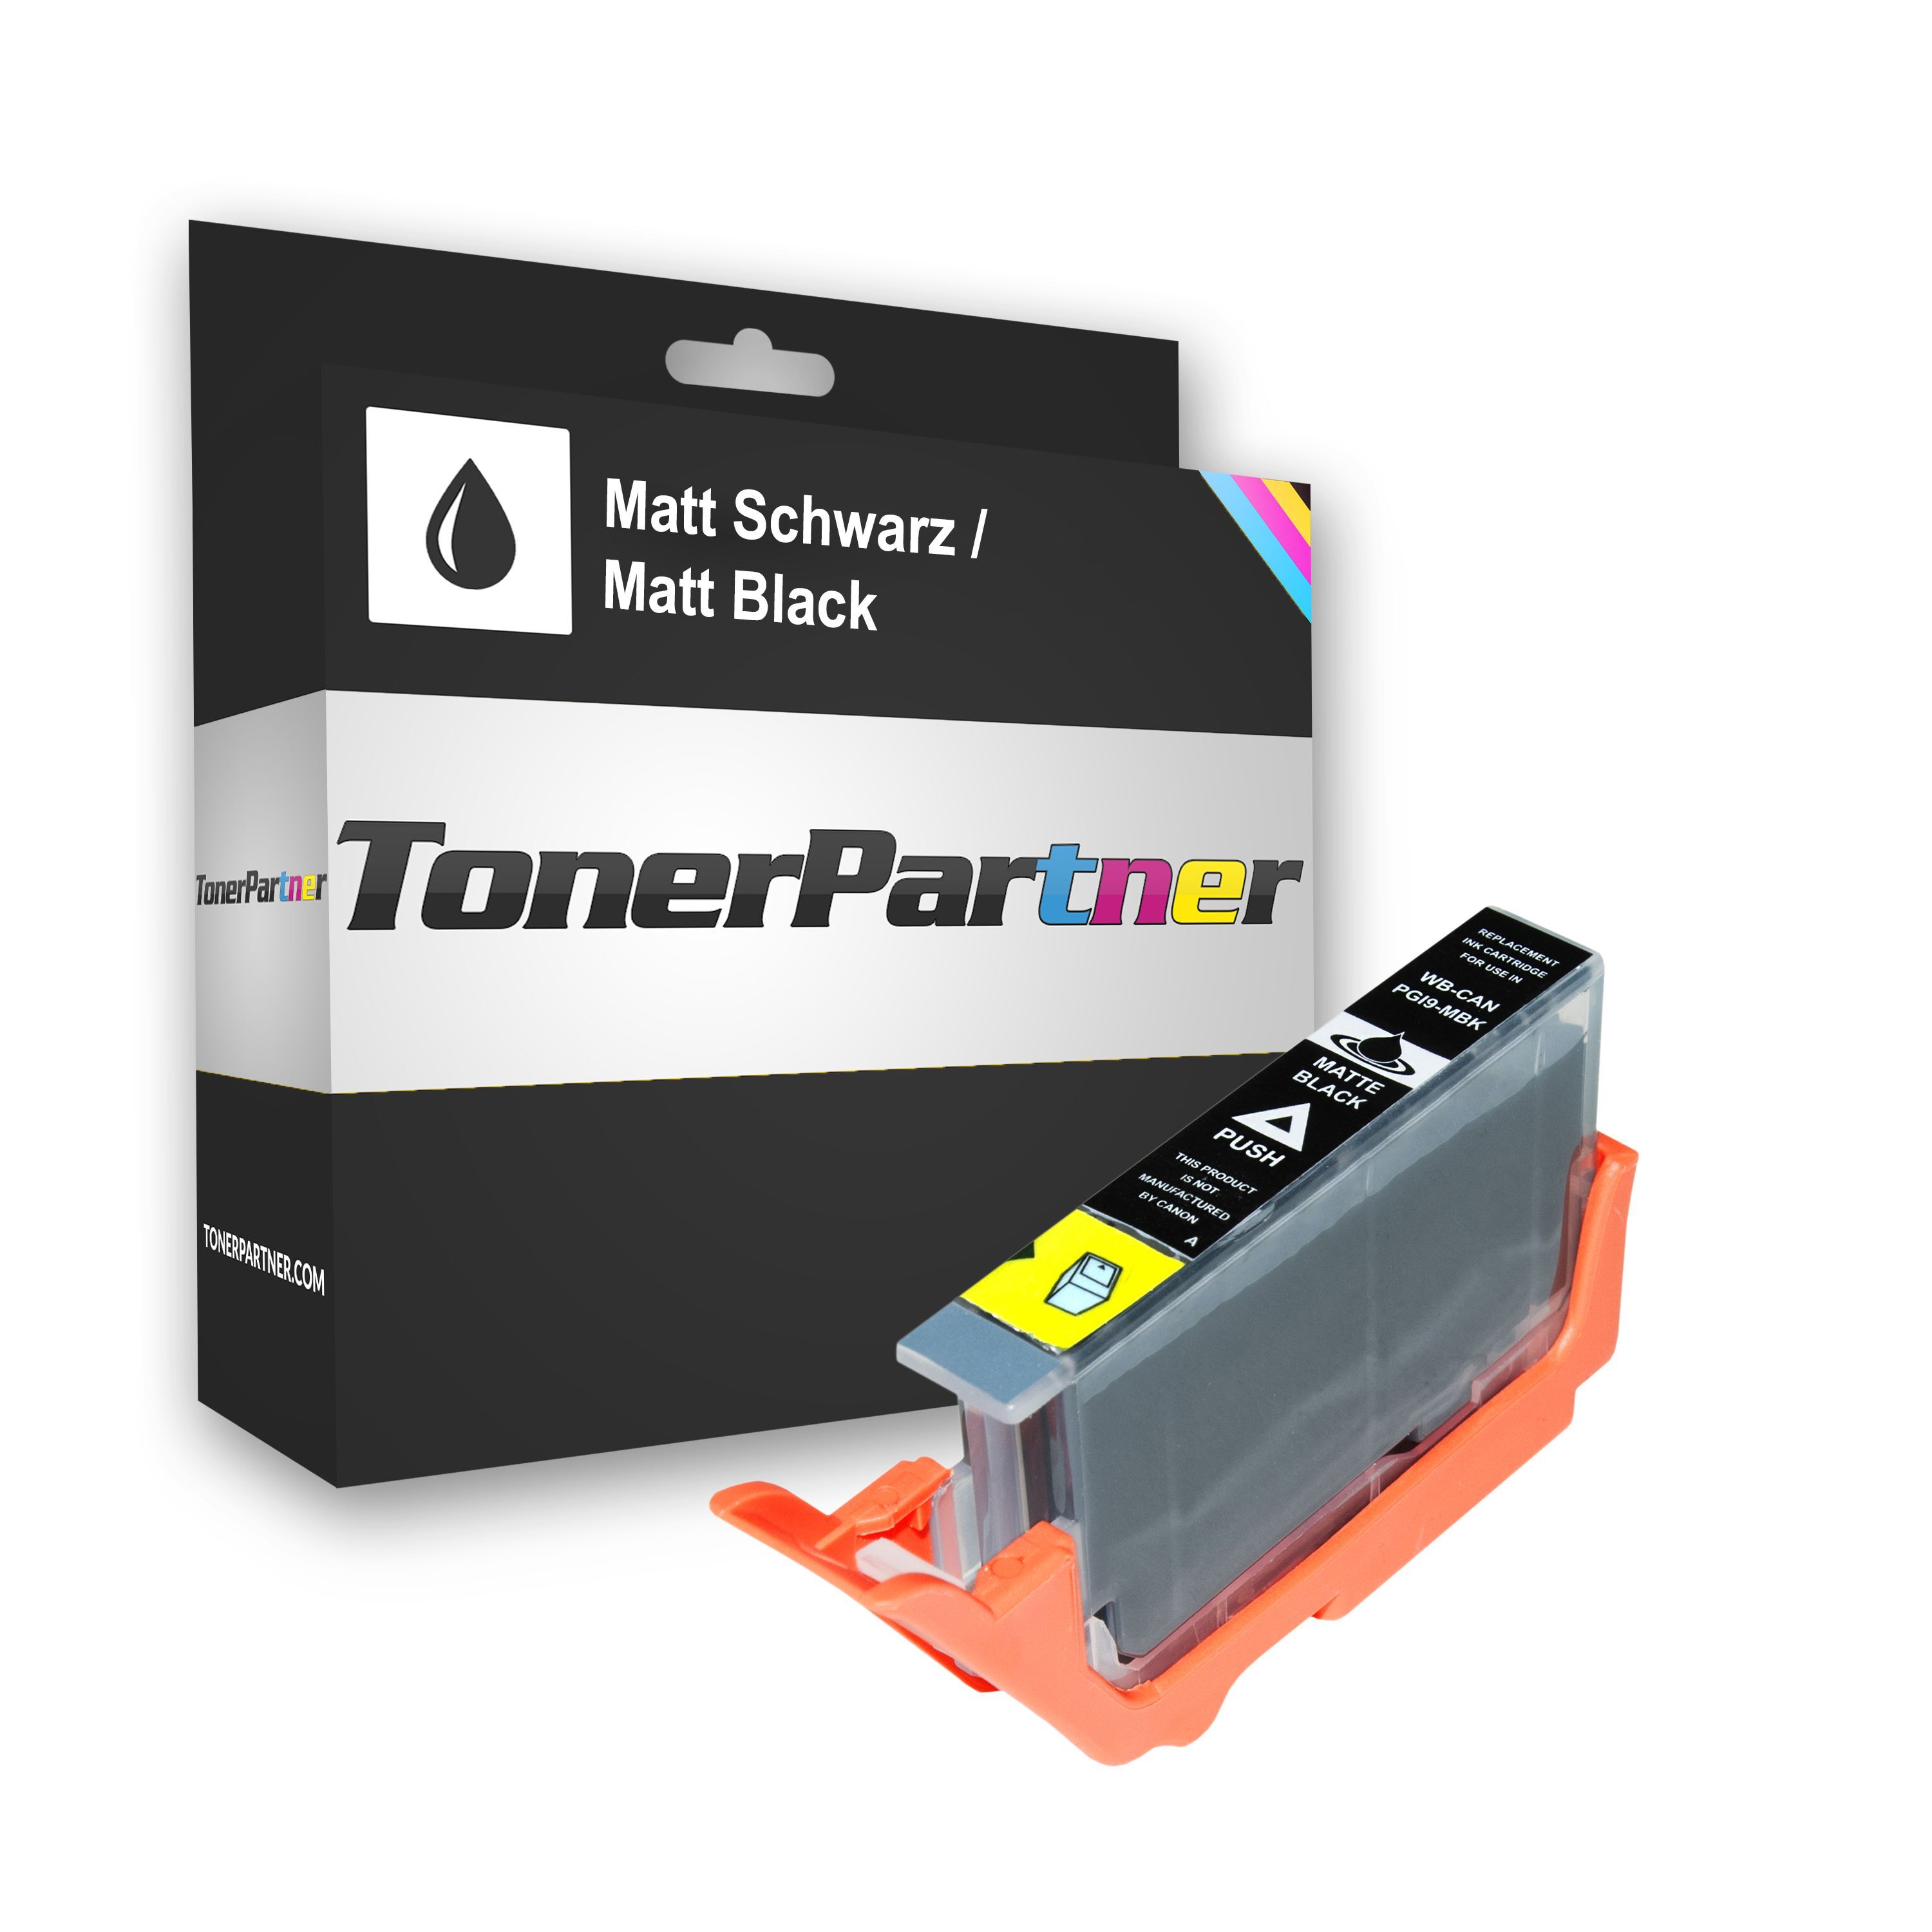 TonerPartner Kompatibel zu Canon 1033 B 001 / PGI-9 MBK Tintenpatrone schwarz, 630 Seiten, 1,32 Rp pro Seite, Inhalt: 14 ml von TonerPartner